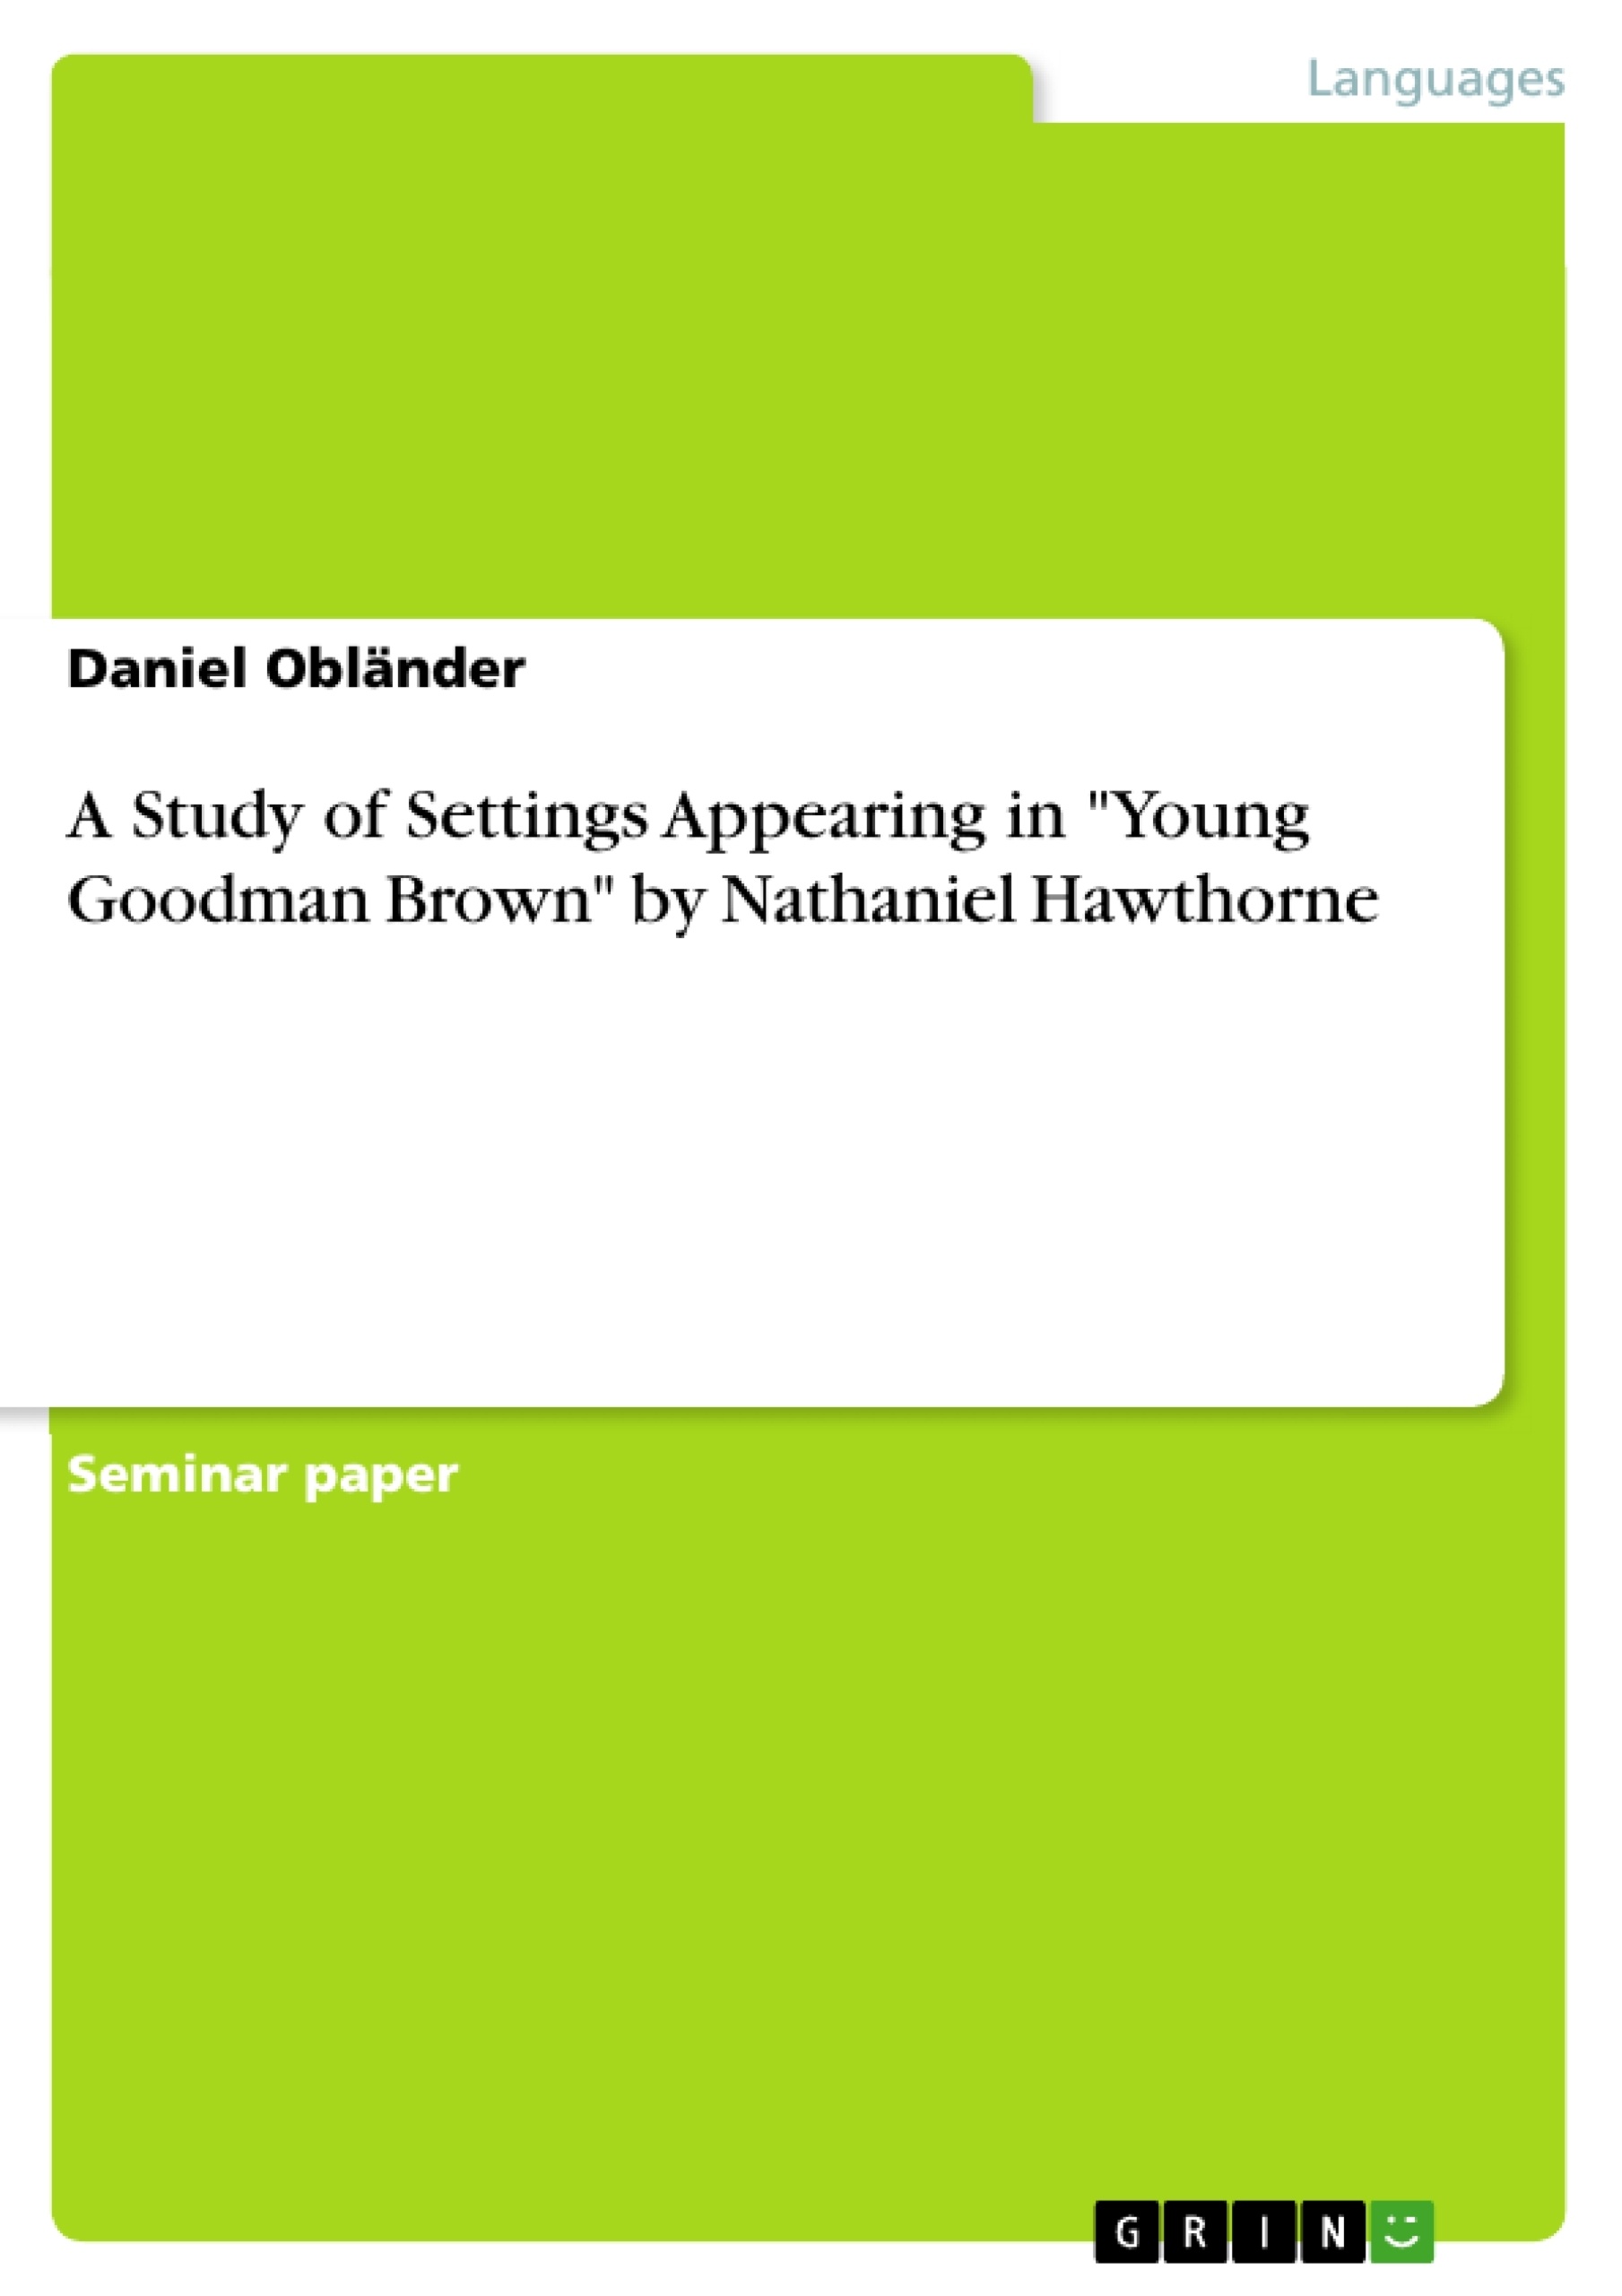 Nathaniel Hawthorne Essay